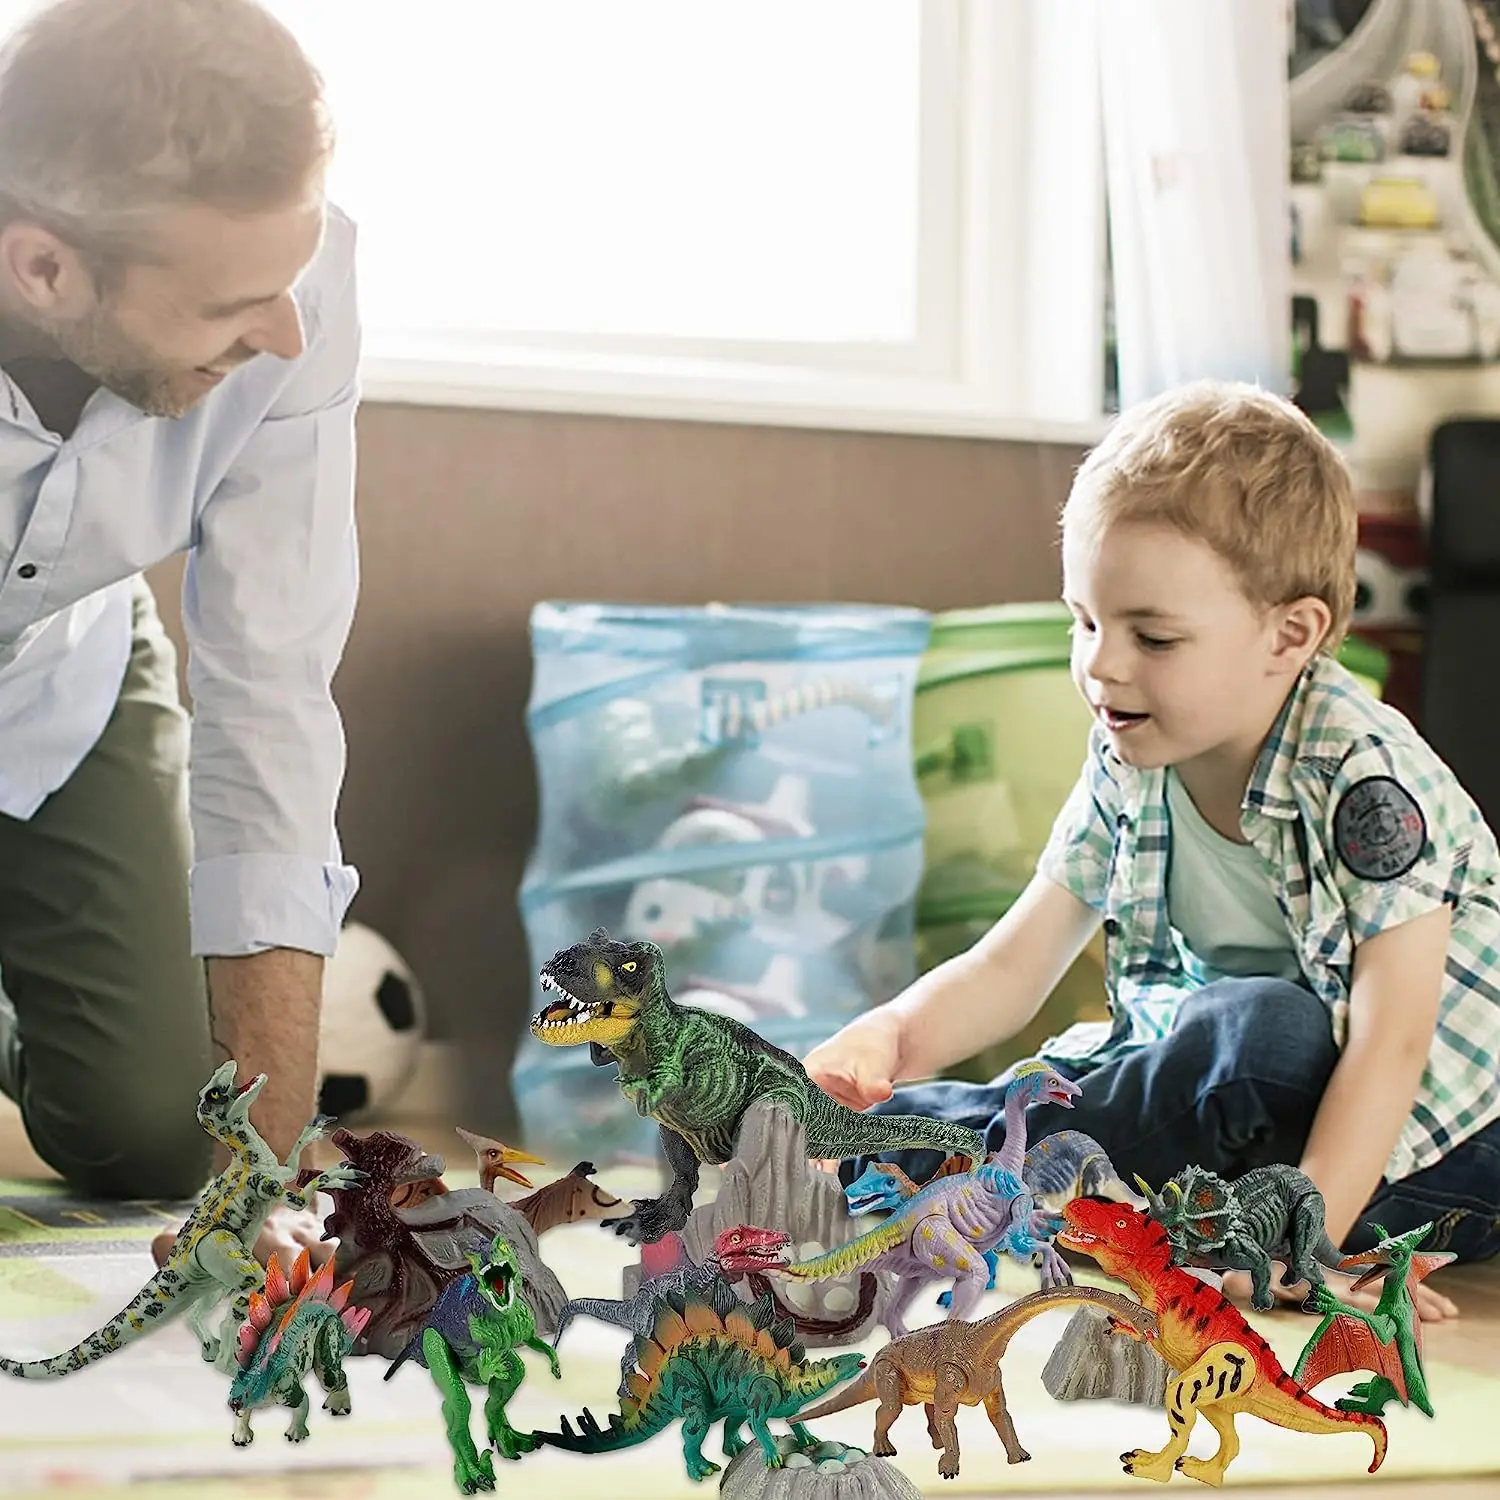 3-7 Colių Dinozaurų Duomenys 4-11Pcs Plastiko Dinozaurų Žaislai Berniukai & Mergaites - yra 